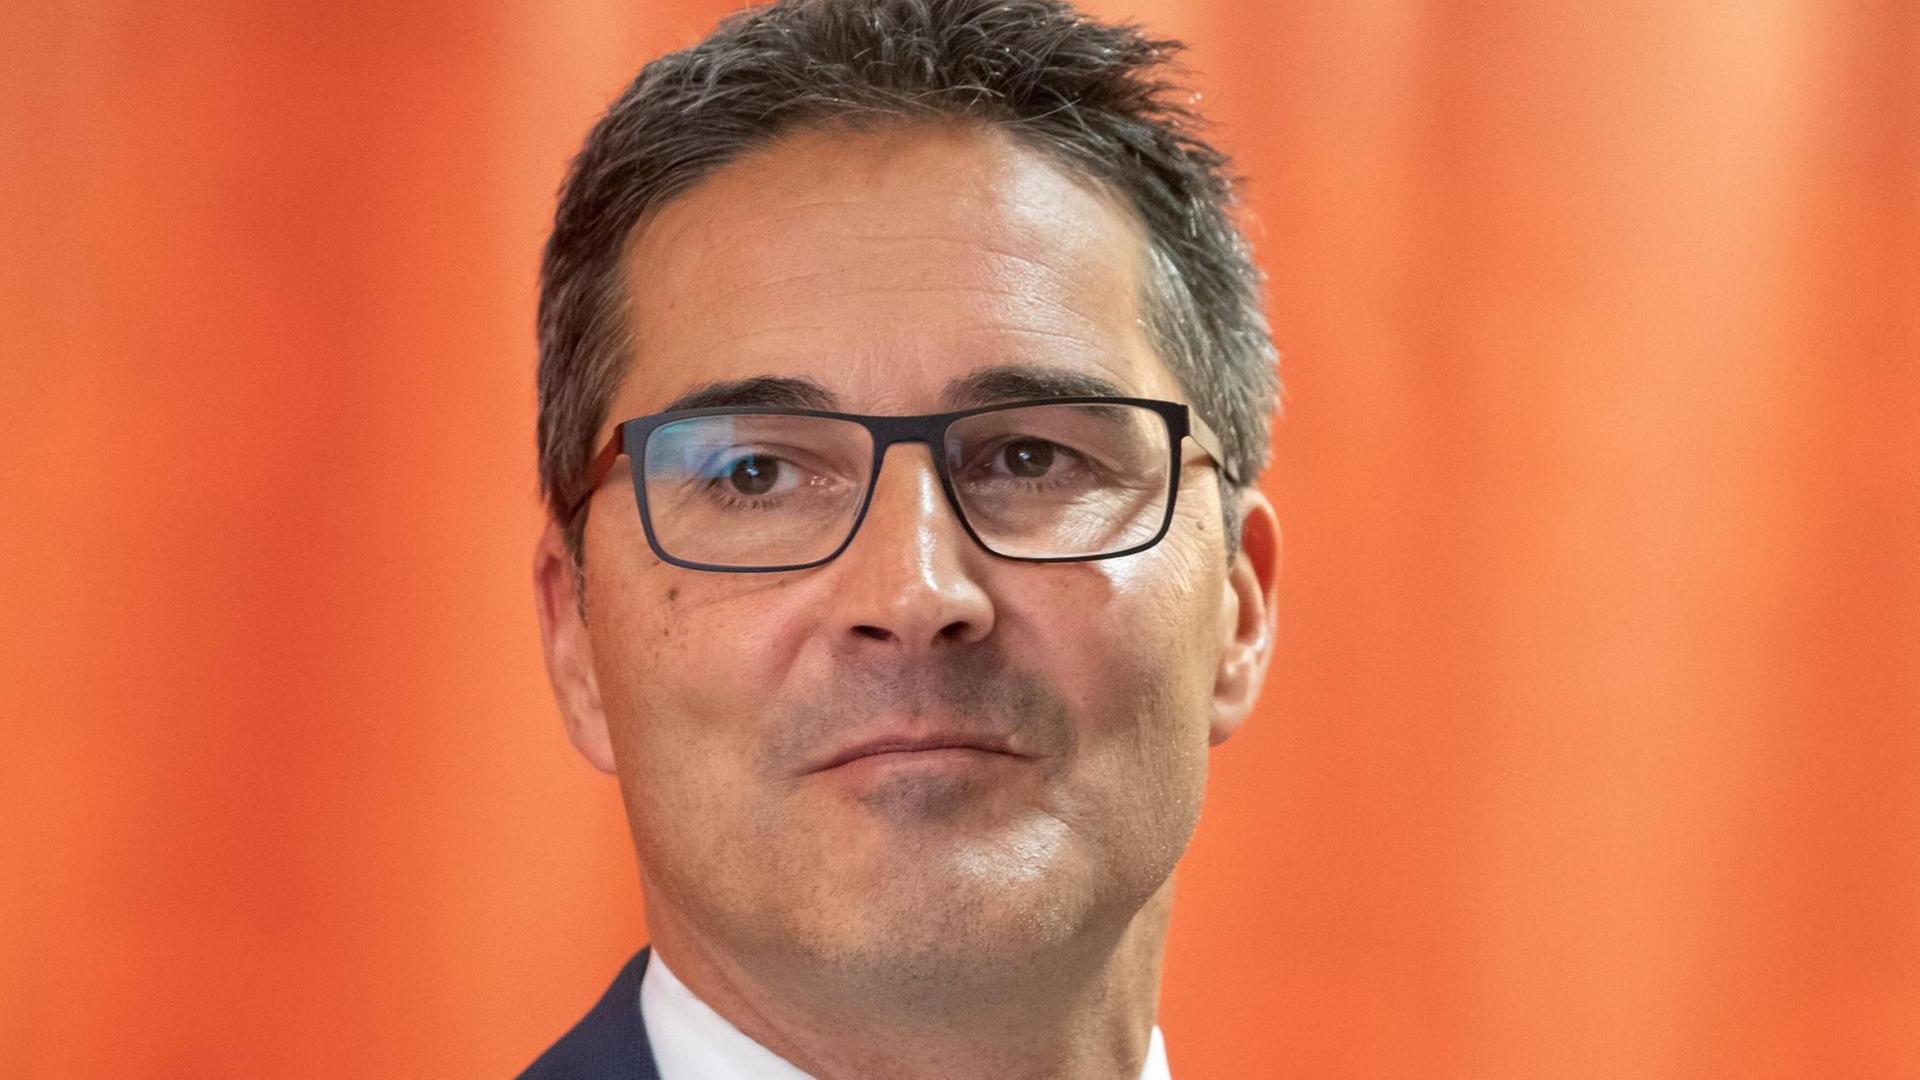 Arno Kompatscher, Landeshauptmann Südtirols und Politiker der Südtiroler Volkspartei SVP am 22.10.2018 auf einer Pressekonferenz in Bozen